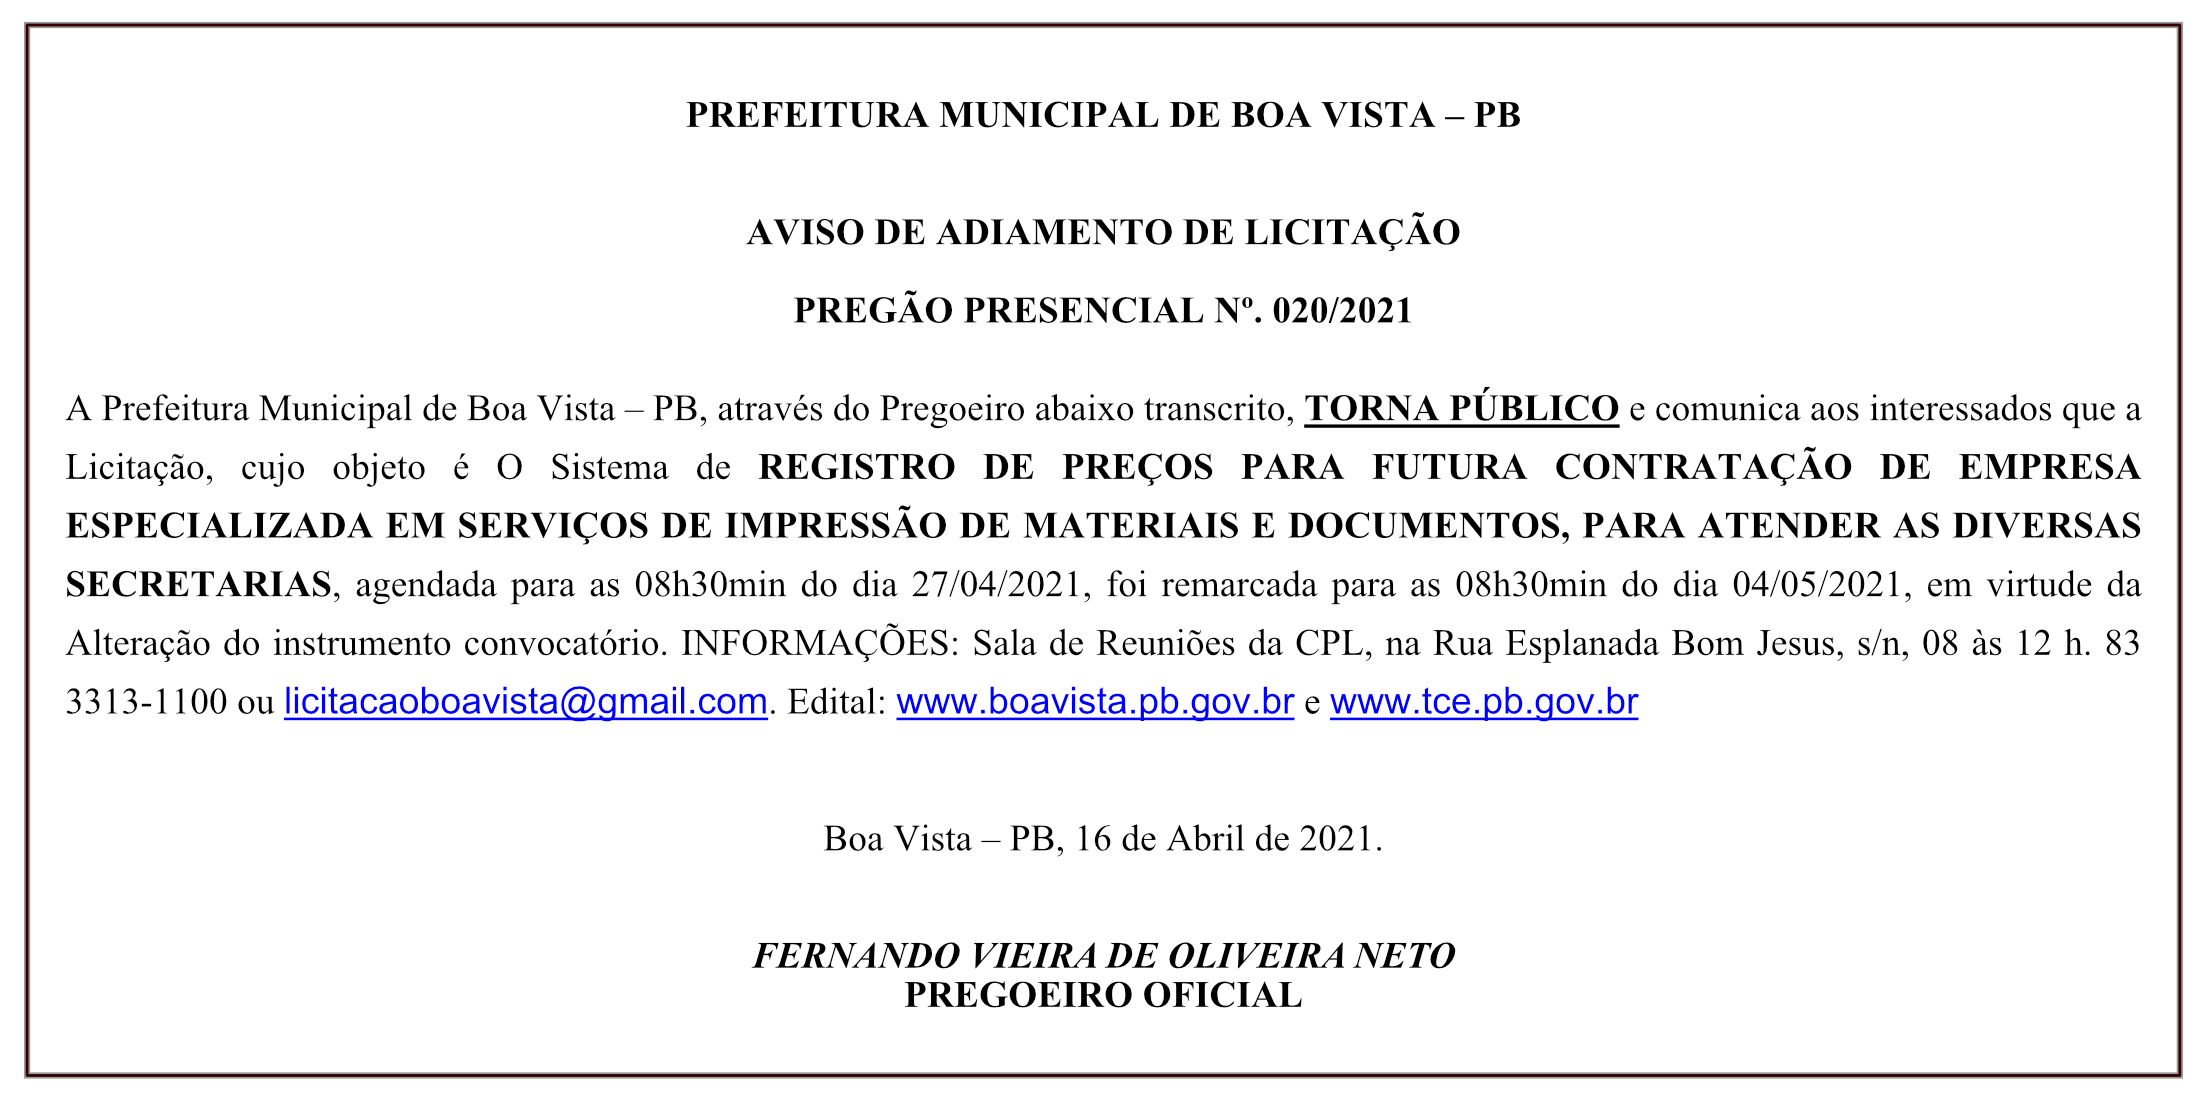 PREFEITURA MUNICIPAL DE BOA VISTA – AVISO DE ADIAMENTO DE LICITAÇÃO – PREGÃO PRESENCIAL Nº 020/2021